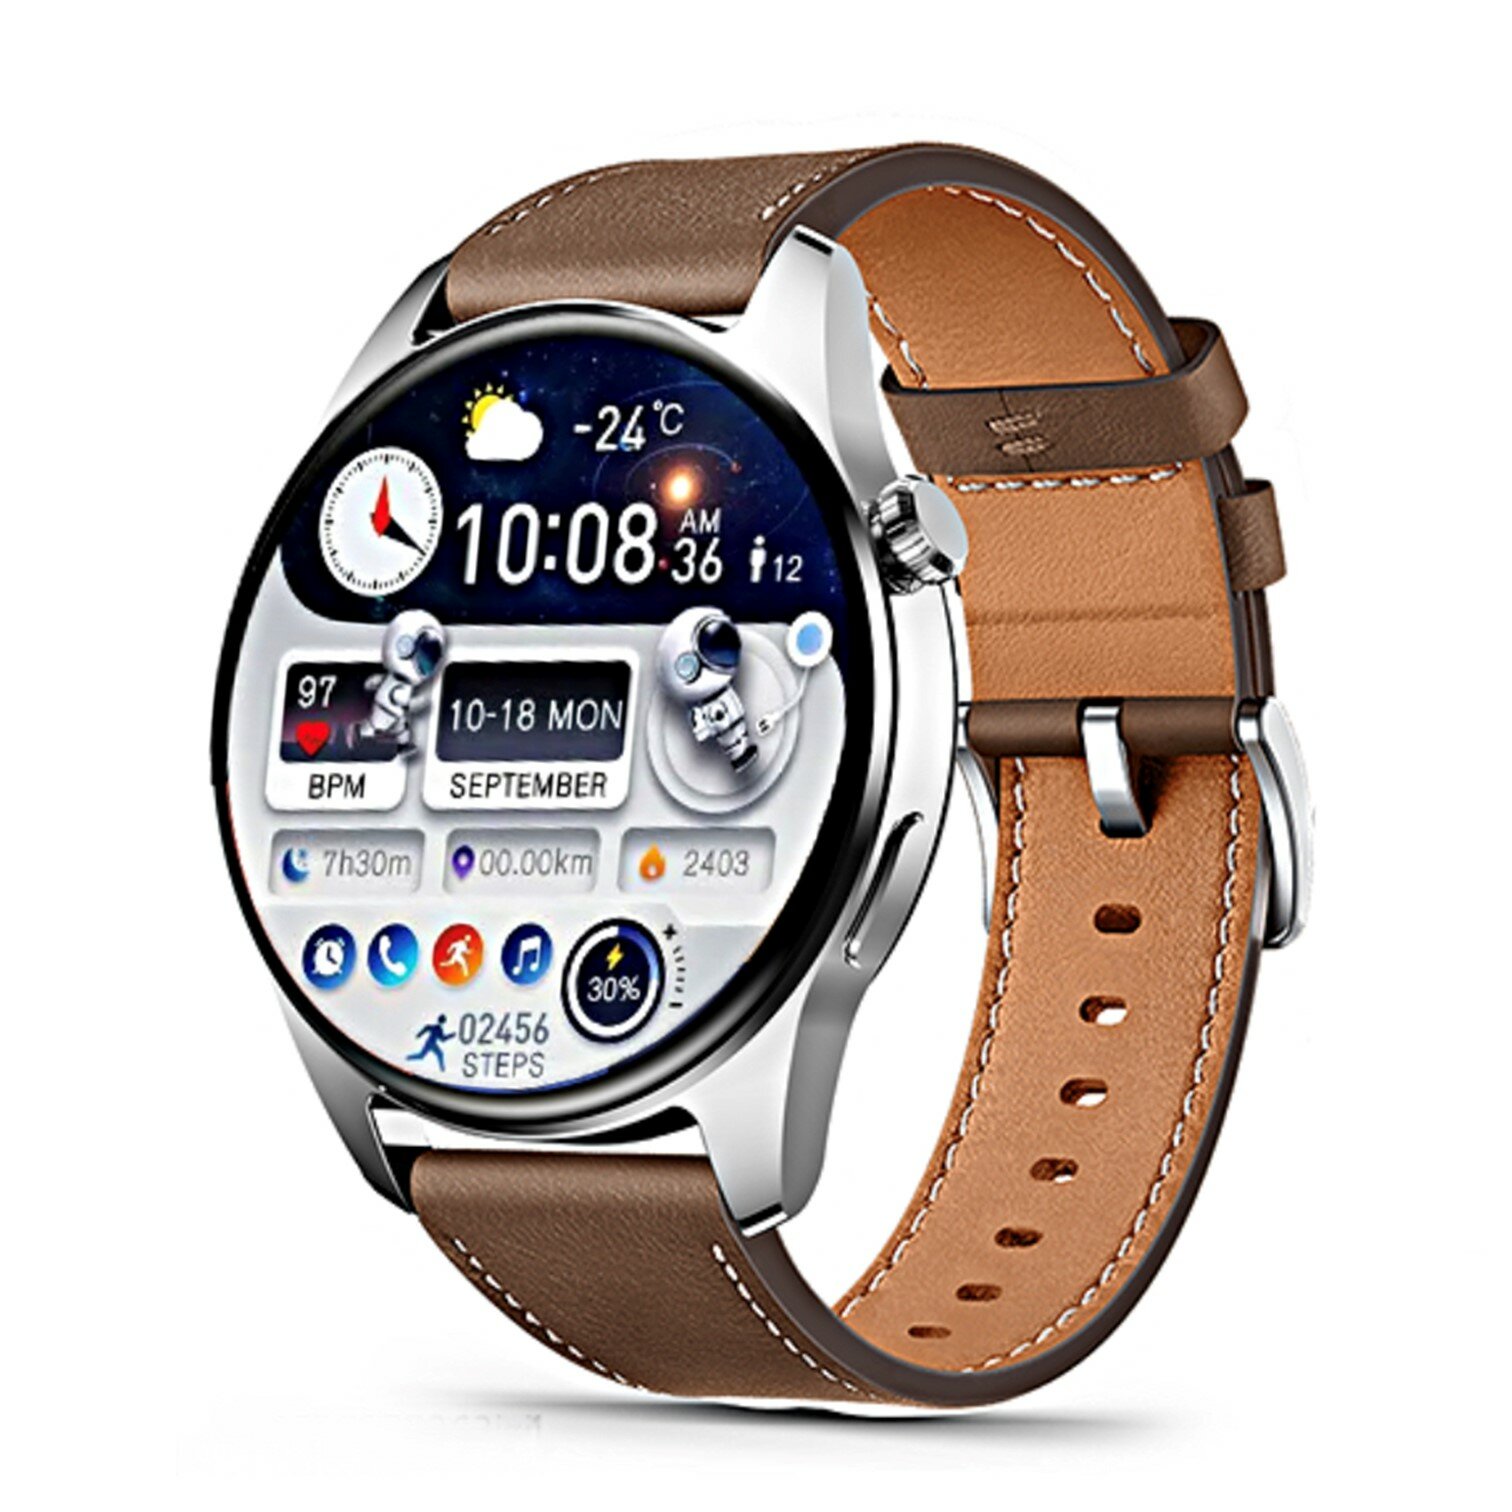 Смарт часы HK4 HERO AMOLED / Умные часы / звонки, уведомления, Bluetooth iOS Android серебристые